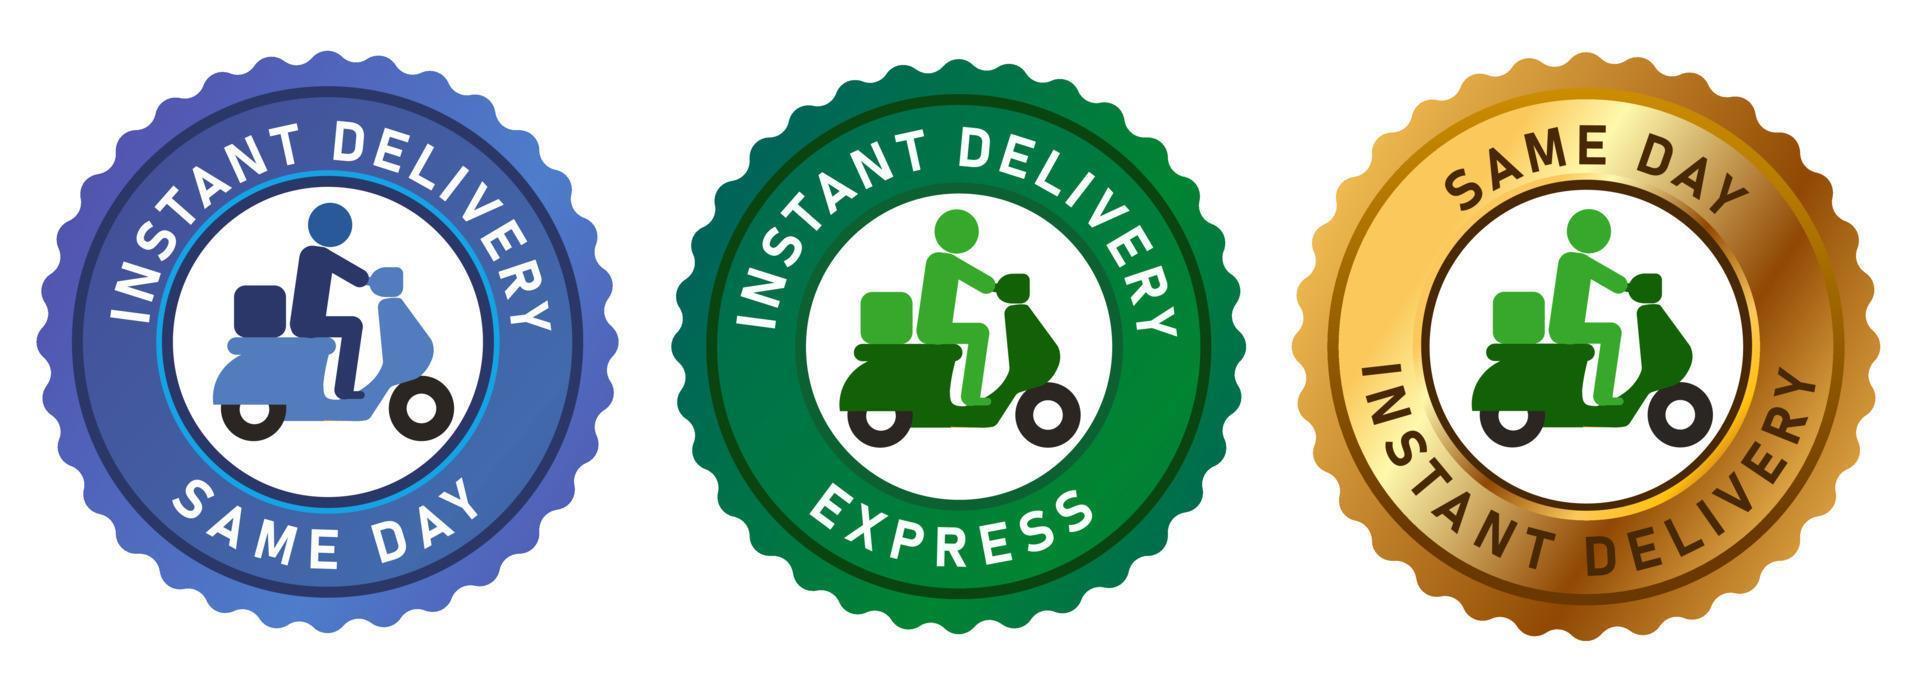 embleem tag label express levering op dezelfde dag express badgesend met fiets motorfiets goud groen blauw vector set